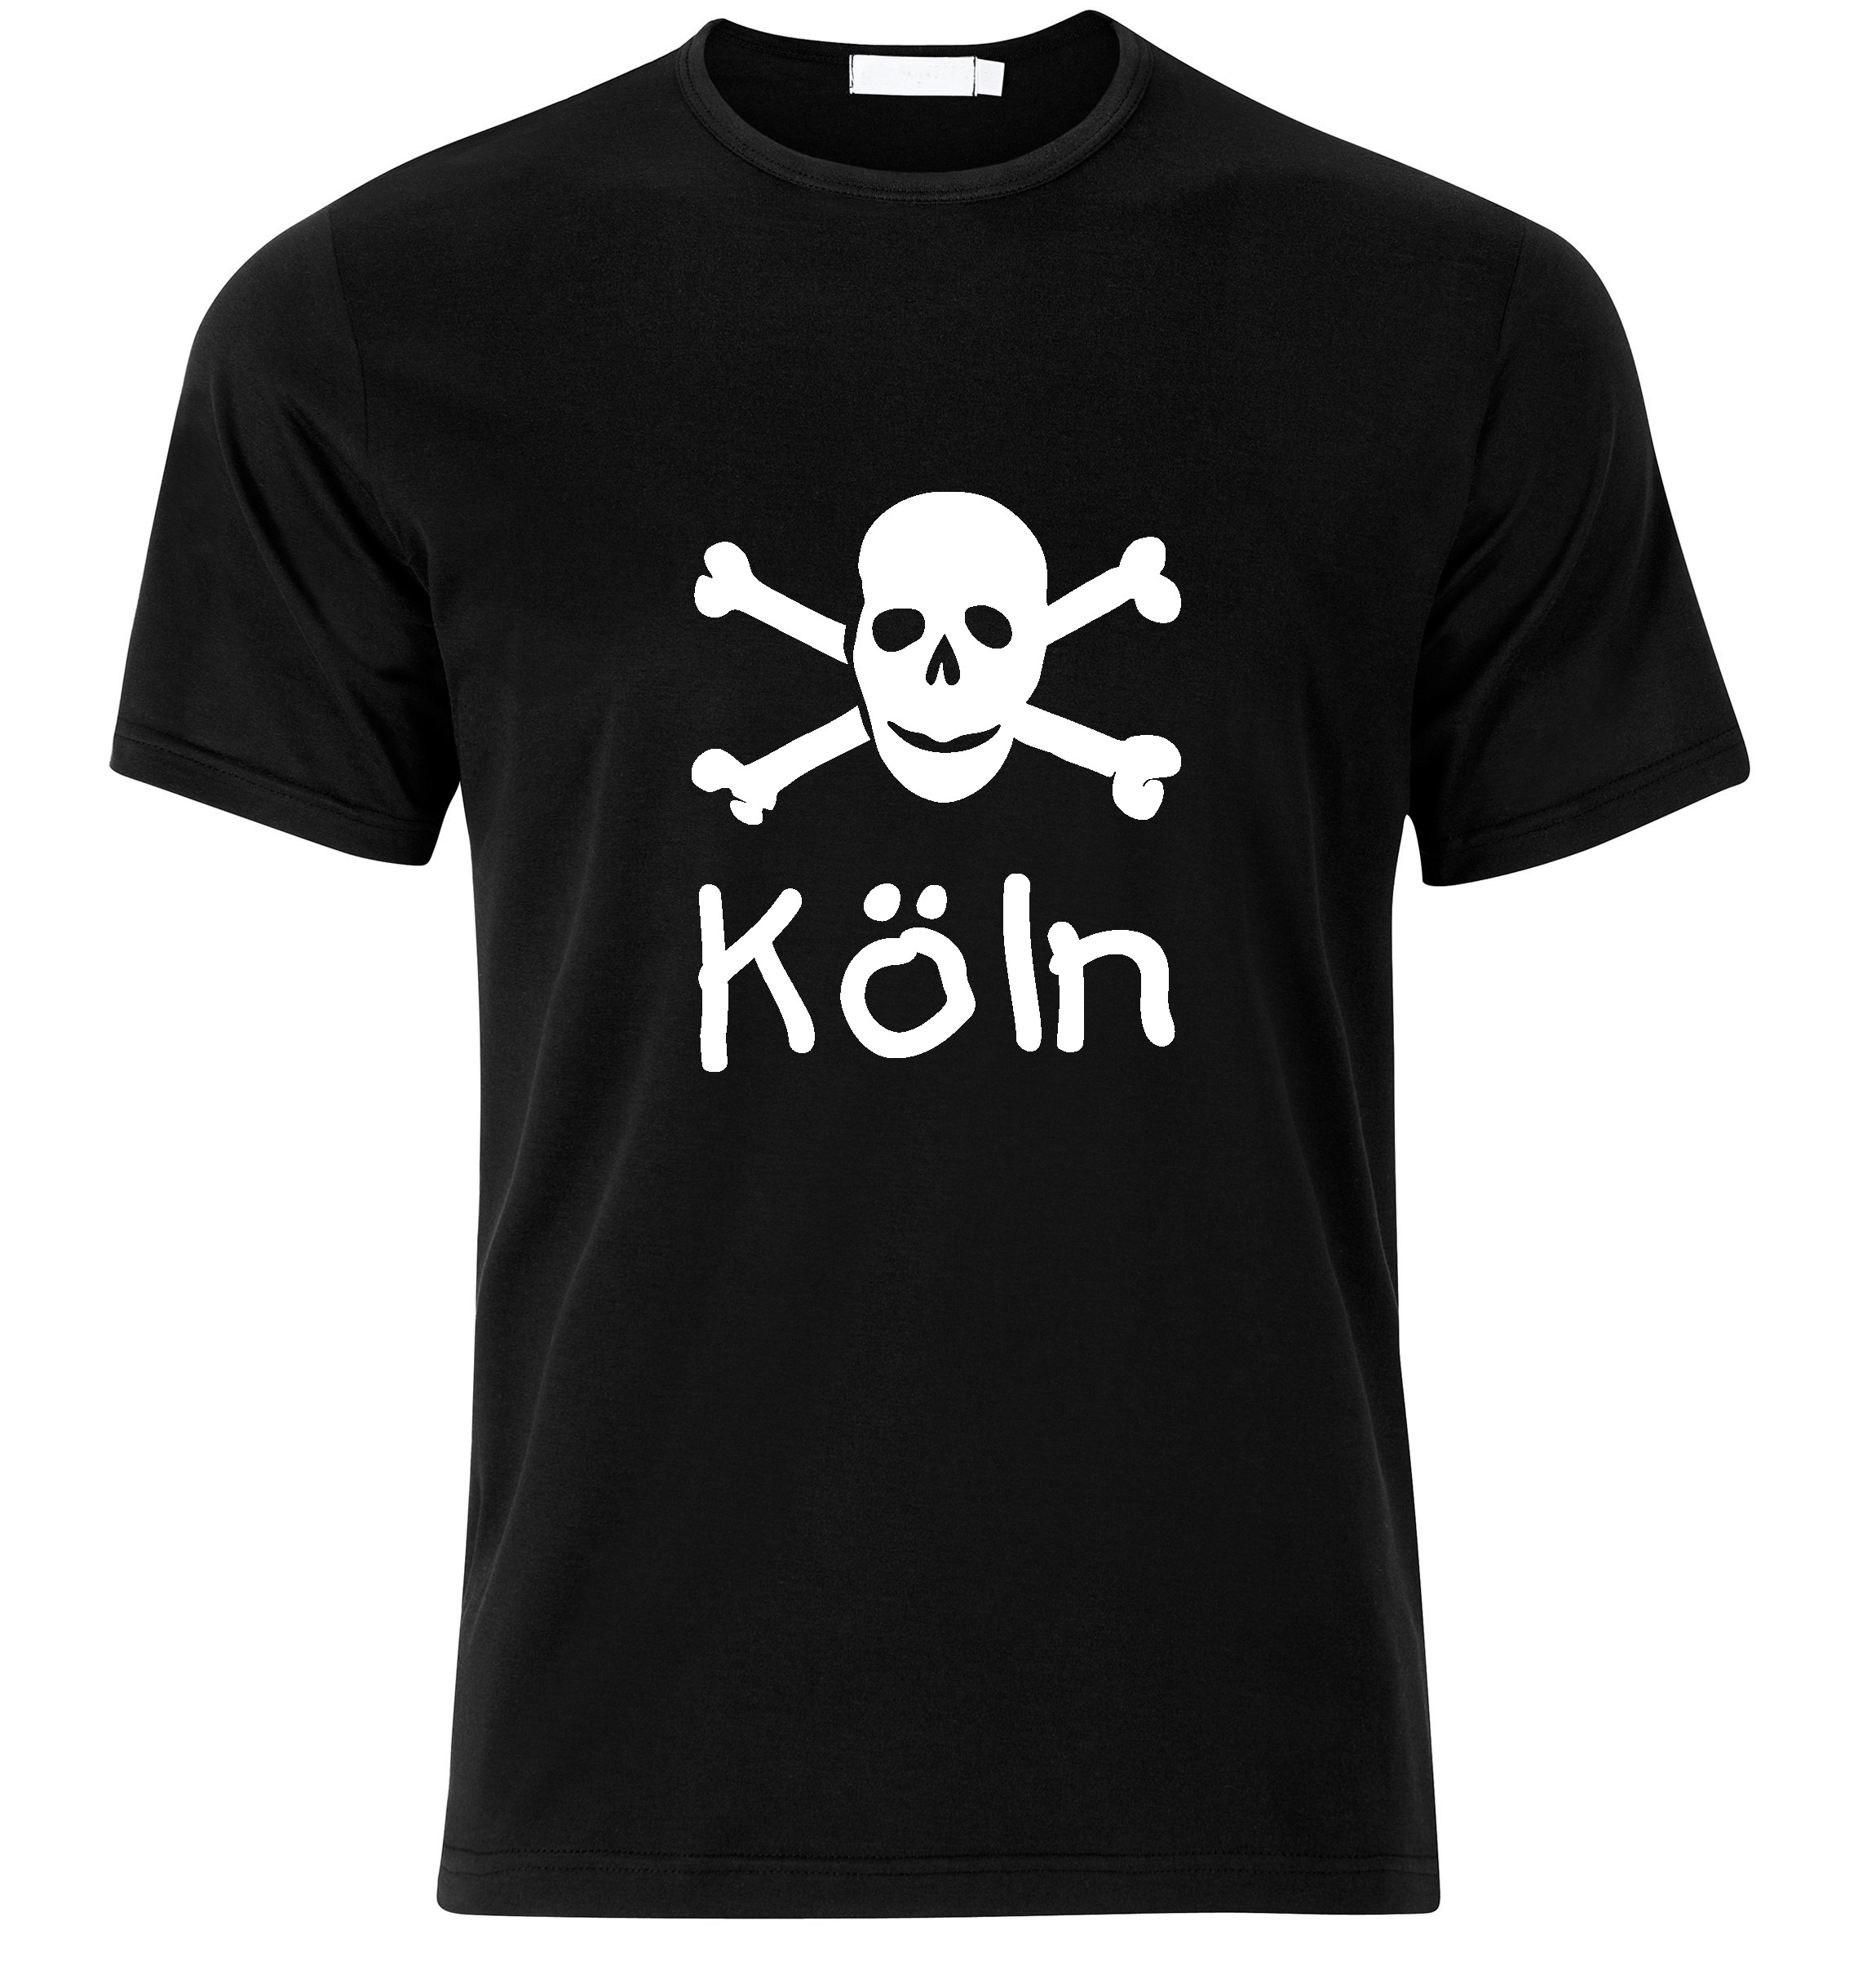 T-Shirt Köln Jolly Roger, Totenkopf